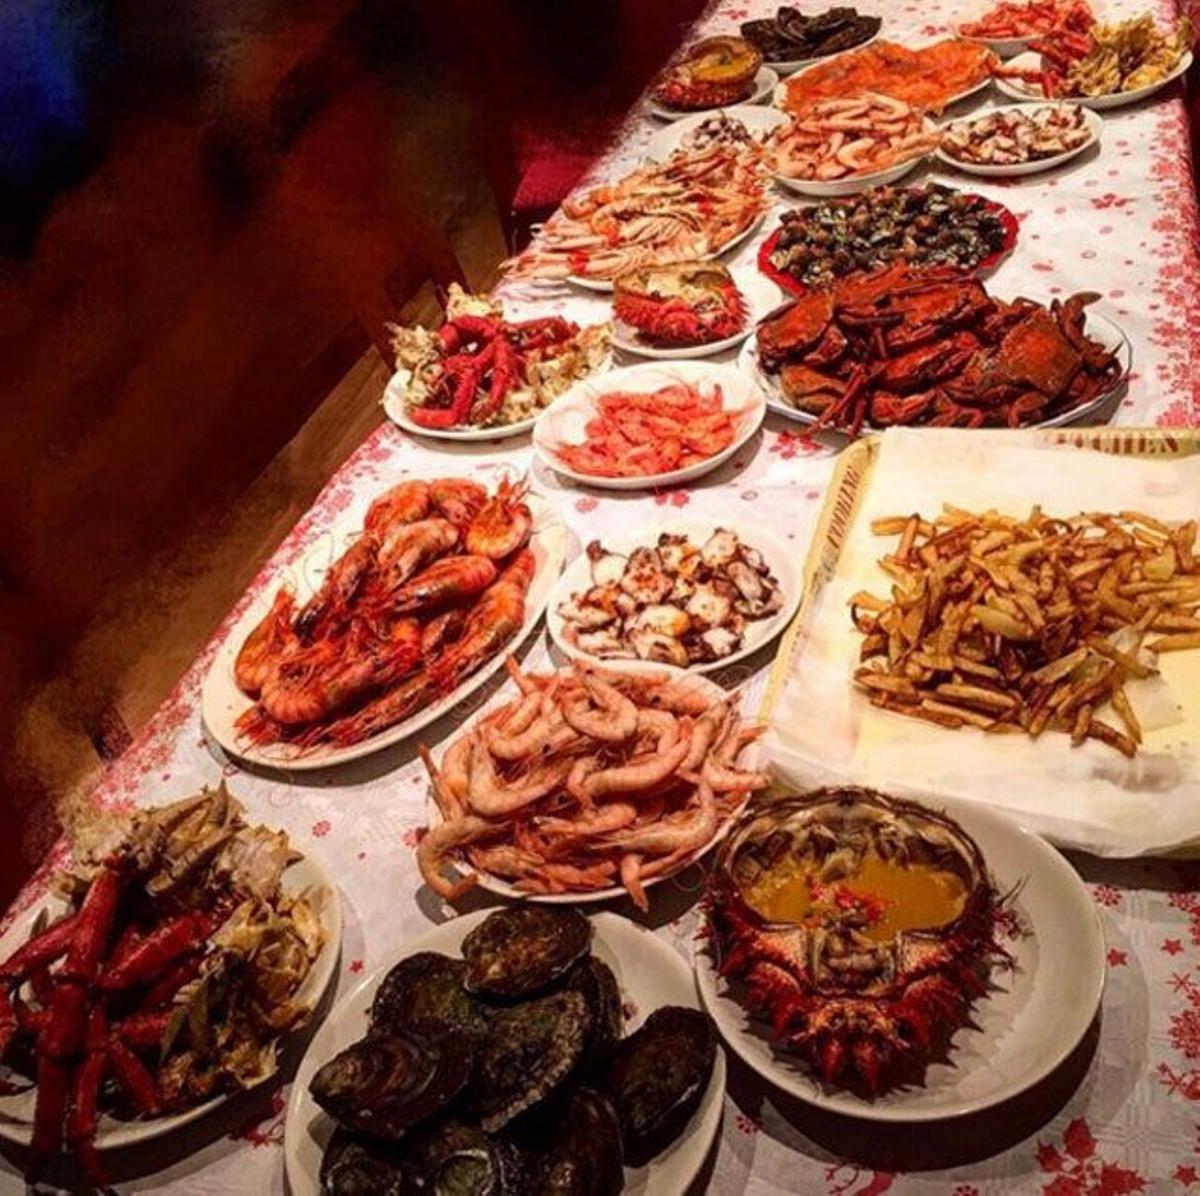 Cristina Pedroche utilizó una imagen de la comida que les estaba esperando para celebrar la Navidad